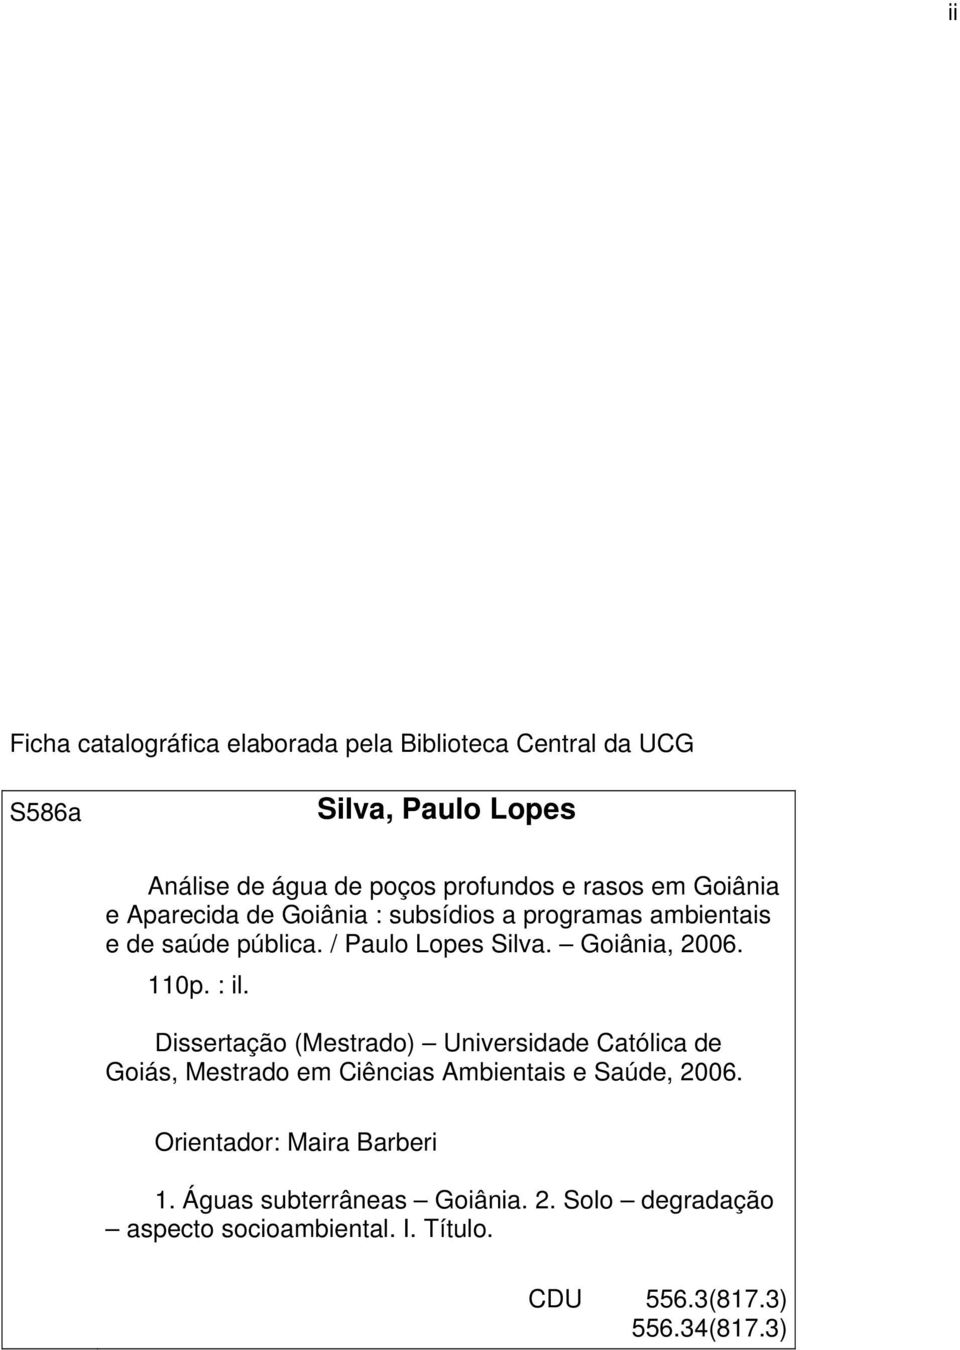 Goiânia, 2006. 110p. : il. Dissertação (Mestrado) Universidade Católica de Goiás, Mestrado em Ciências Ambientais e Saúde, 2006.